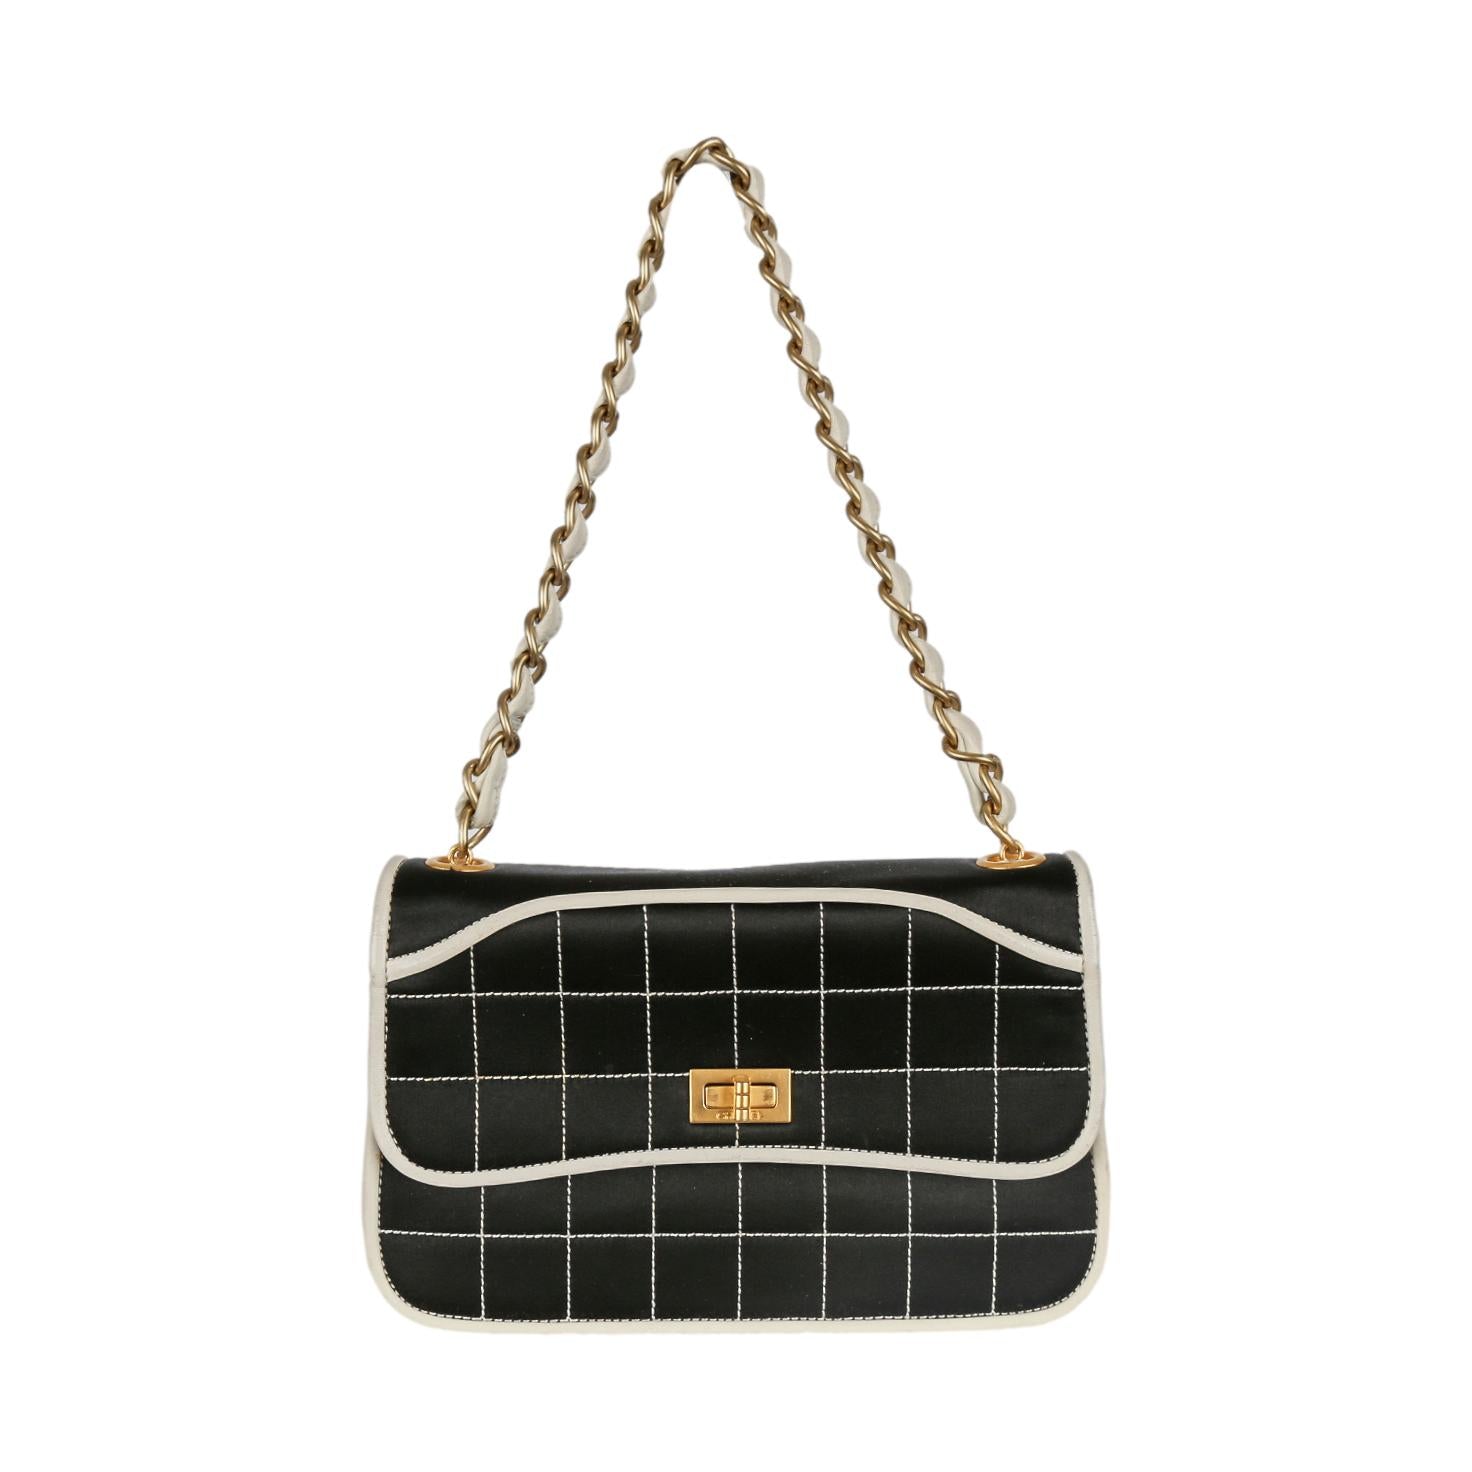 Chanel Black Quilted Satin Chain Shoulder Bag